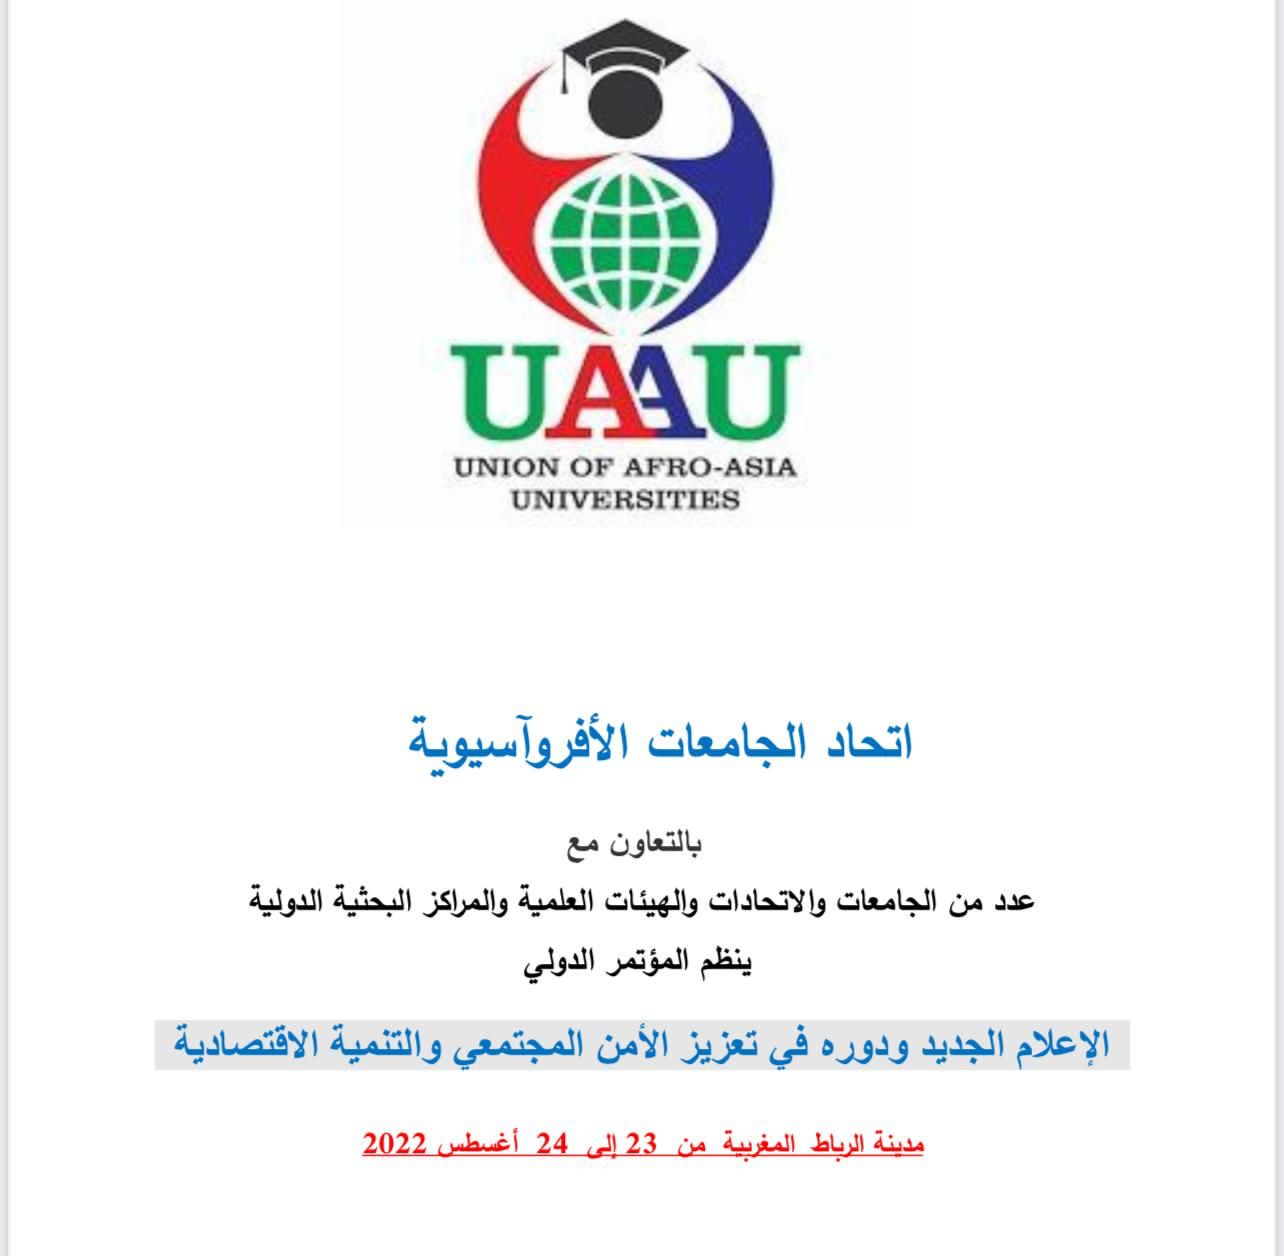 مؤتمراً إعلاميا بحثيا بإشراف اتحاد الجامعات الأفروآسيوية سيعقد في المغرب